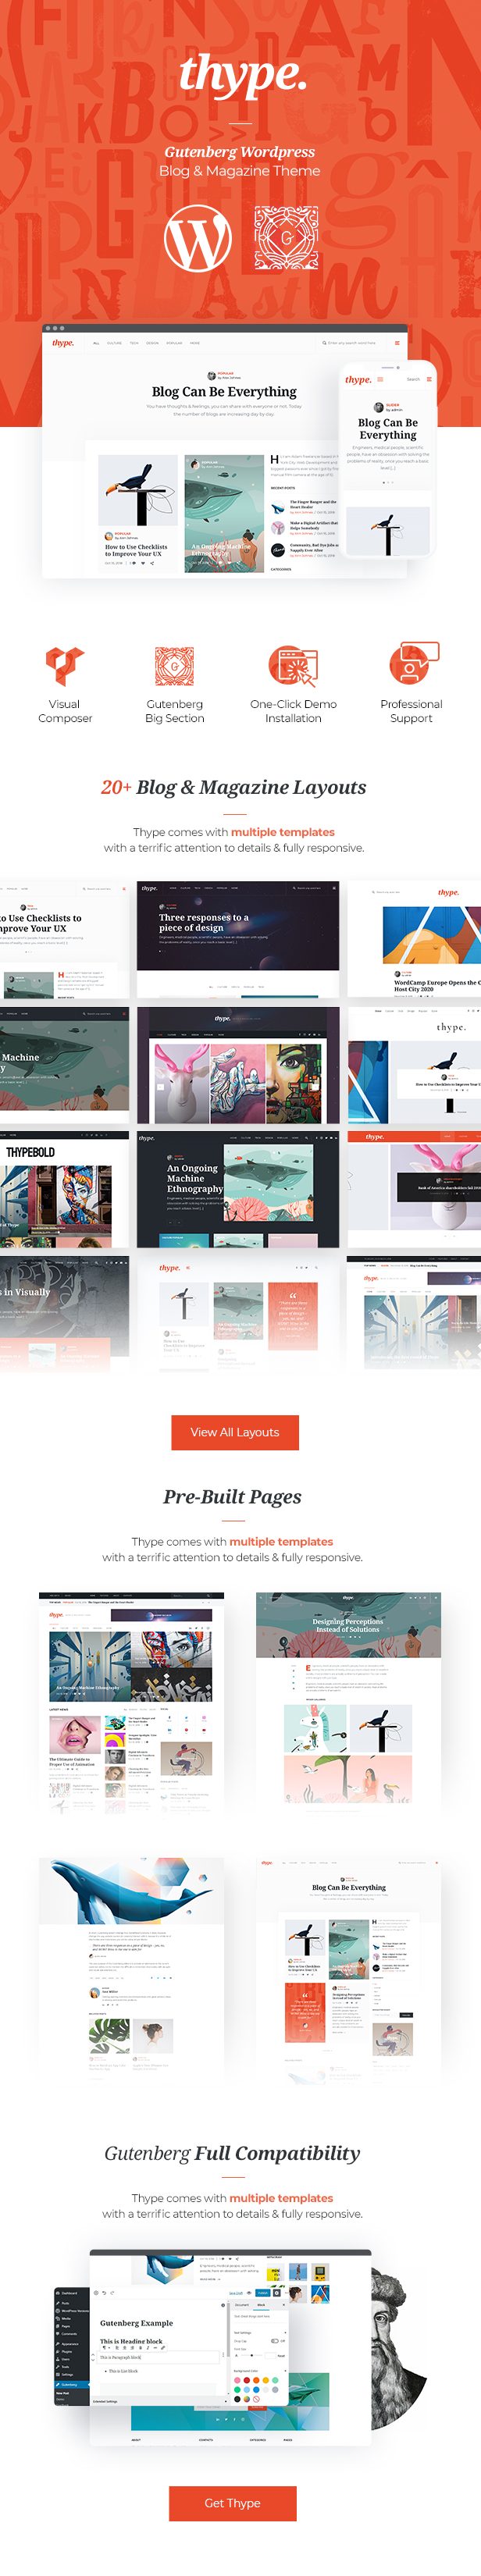 Thype | Thèmes WordPress pour blogs et magazines multi-concept - 1